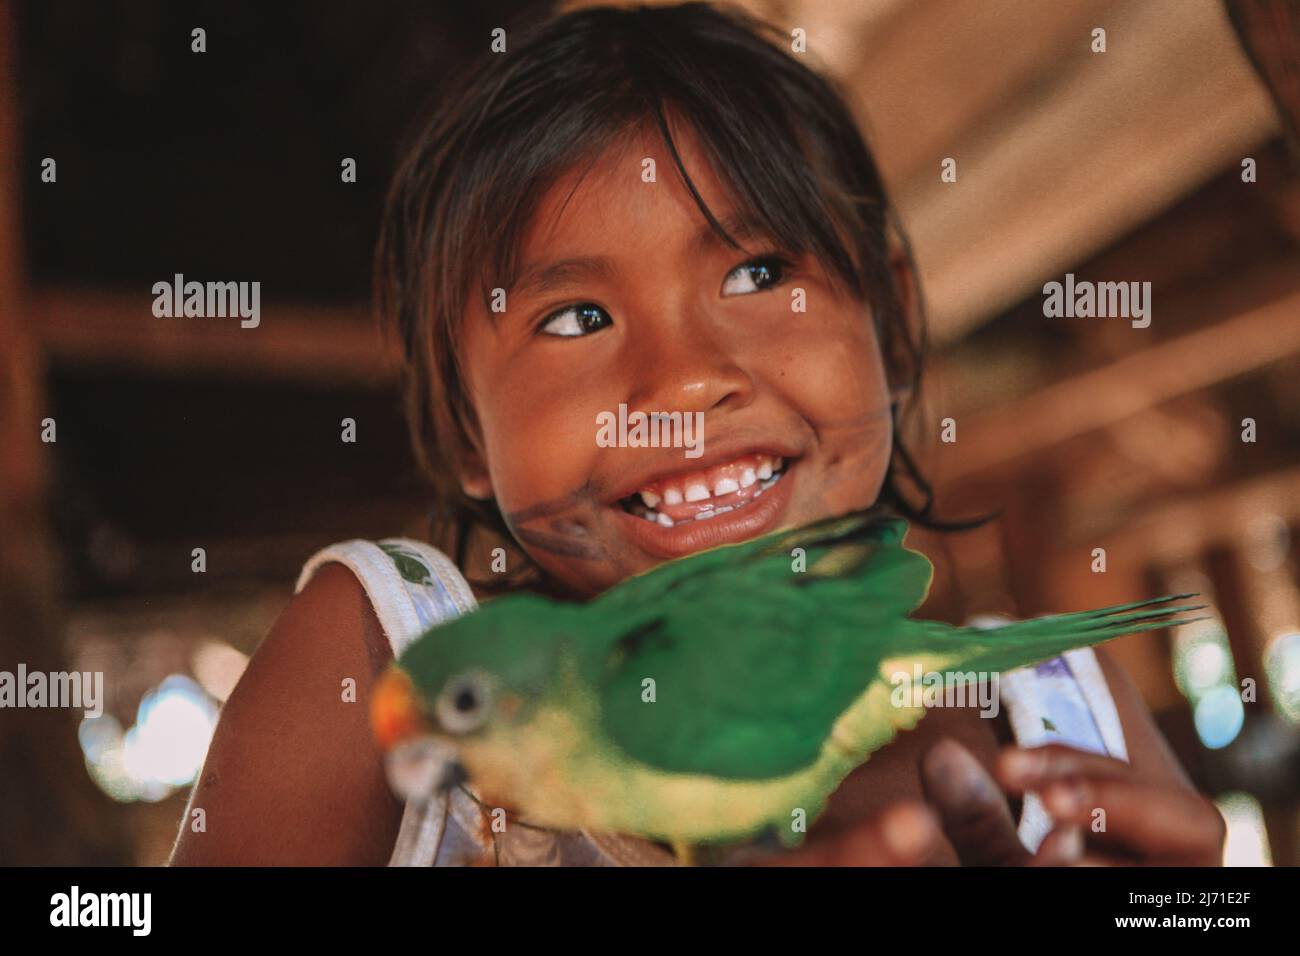 Fille indigène d'origine ethnique amazonienne jouant avec un animal de compagnie. Amazonie brésilienne, 2010. Banque D'Images